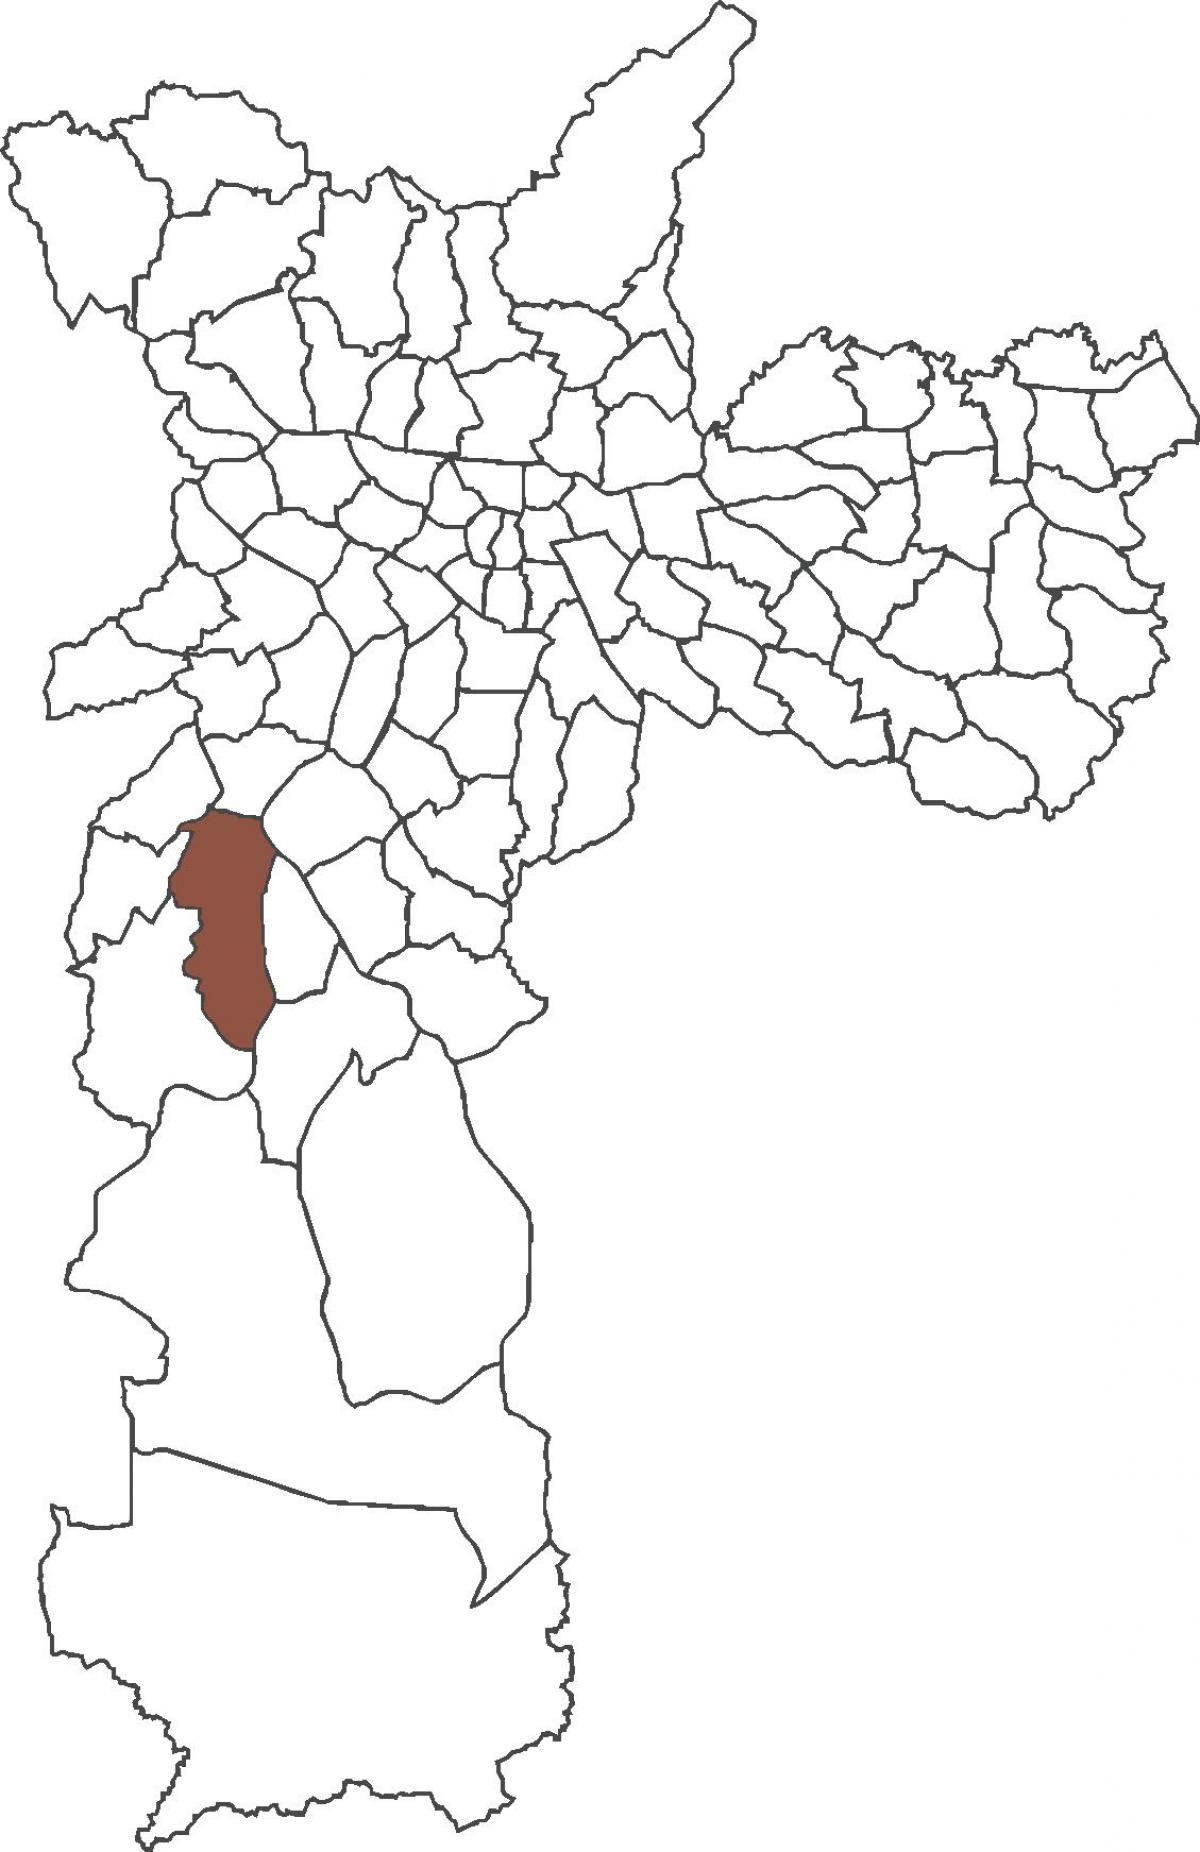 नक्शे के जरदीं São Luís जिला